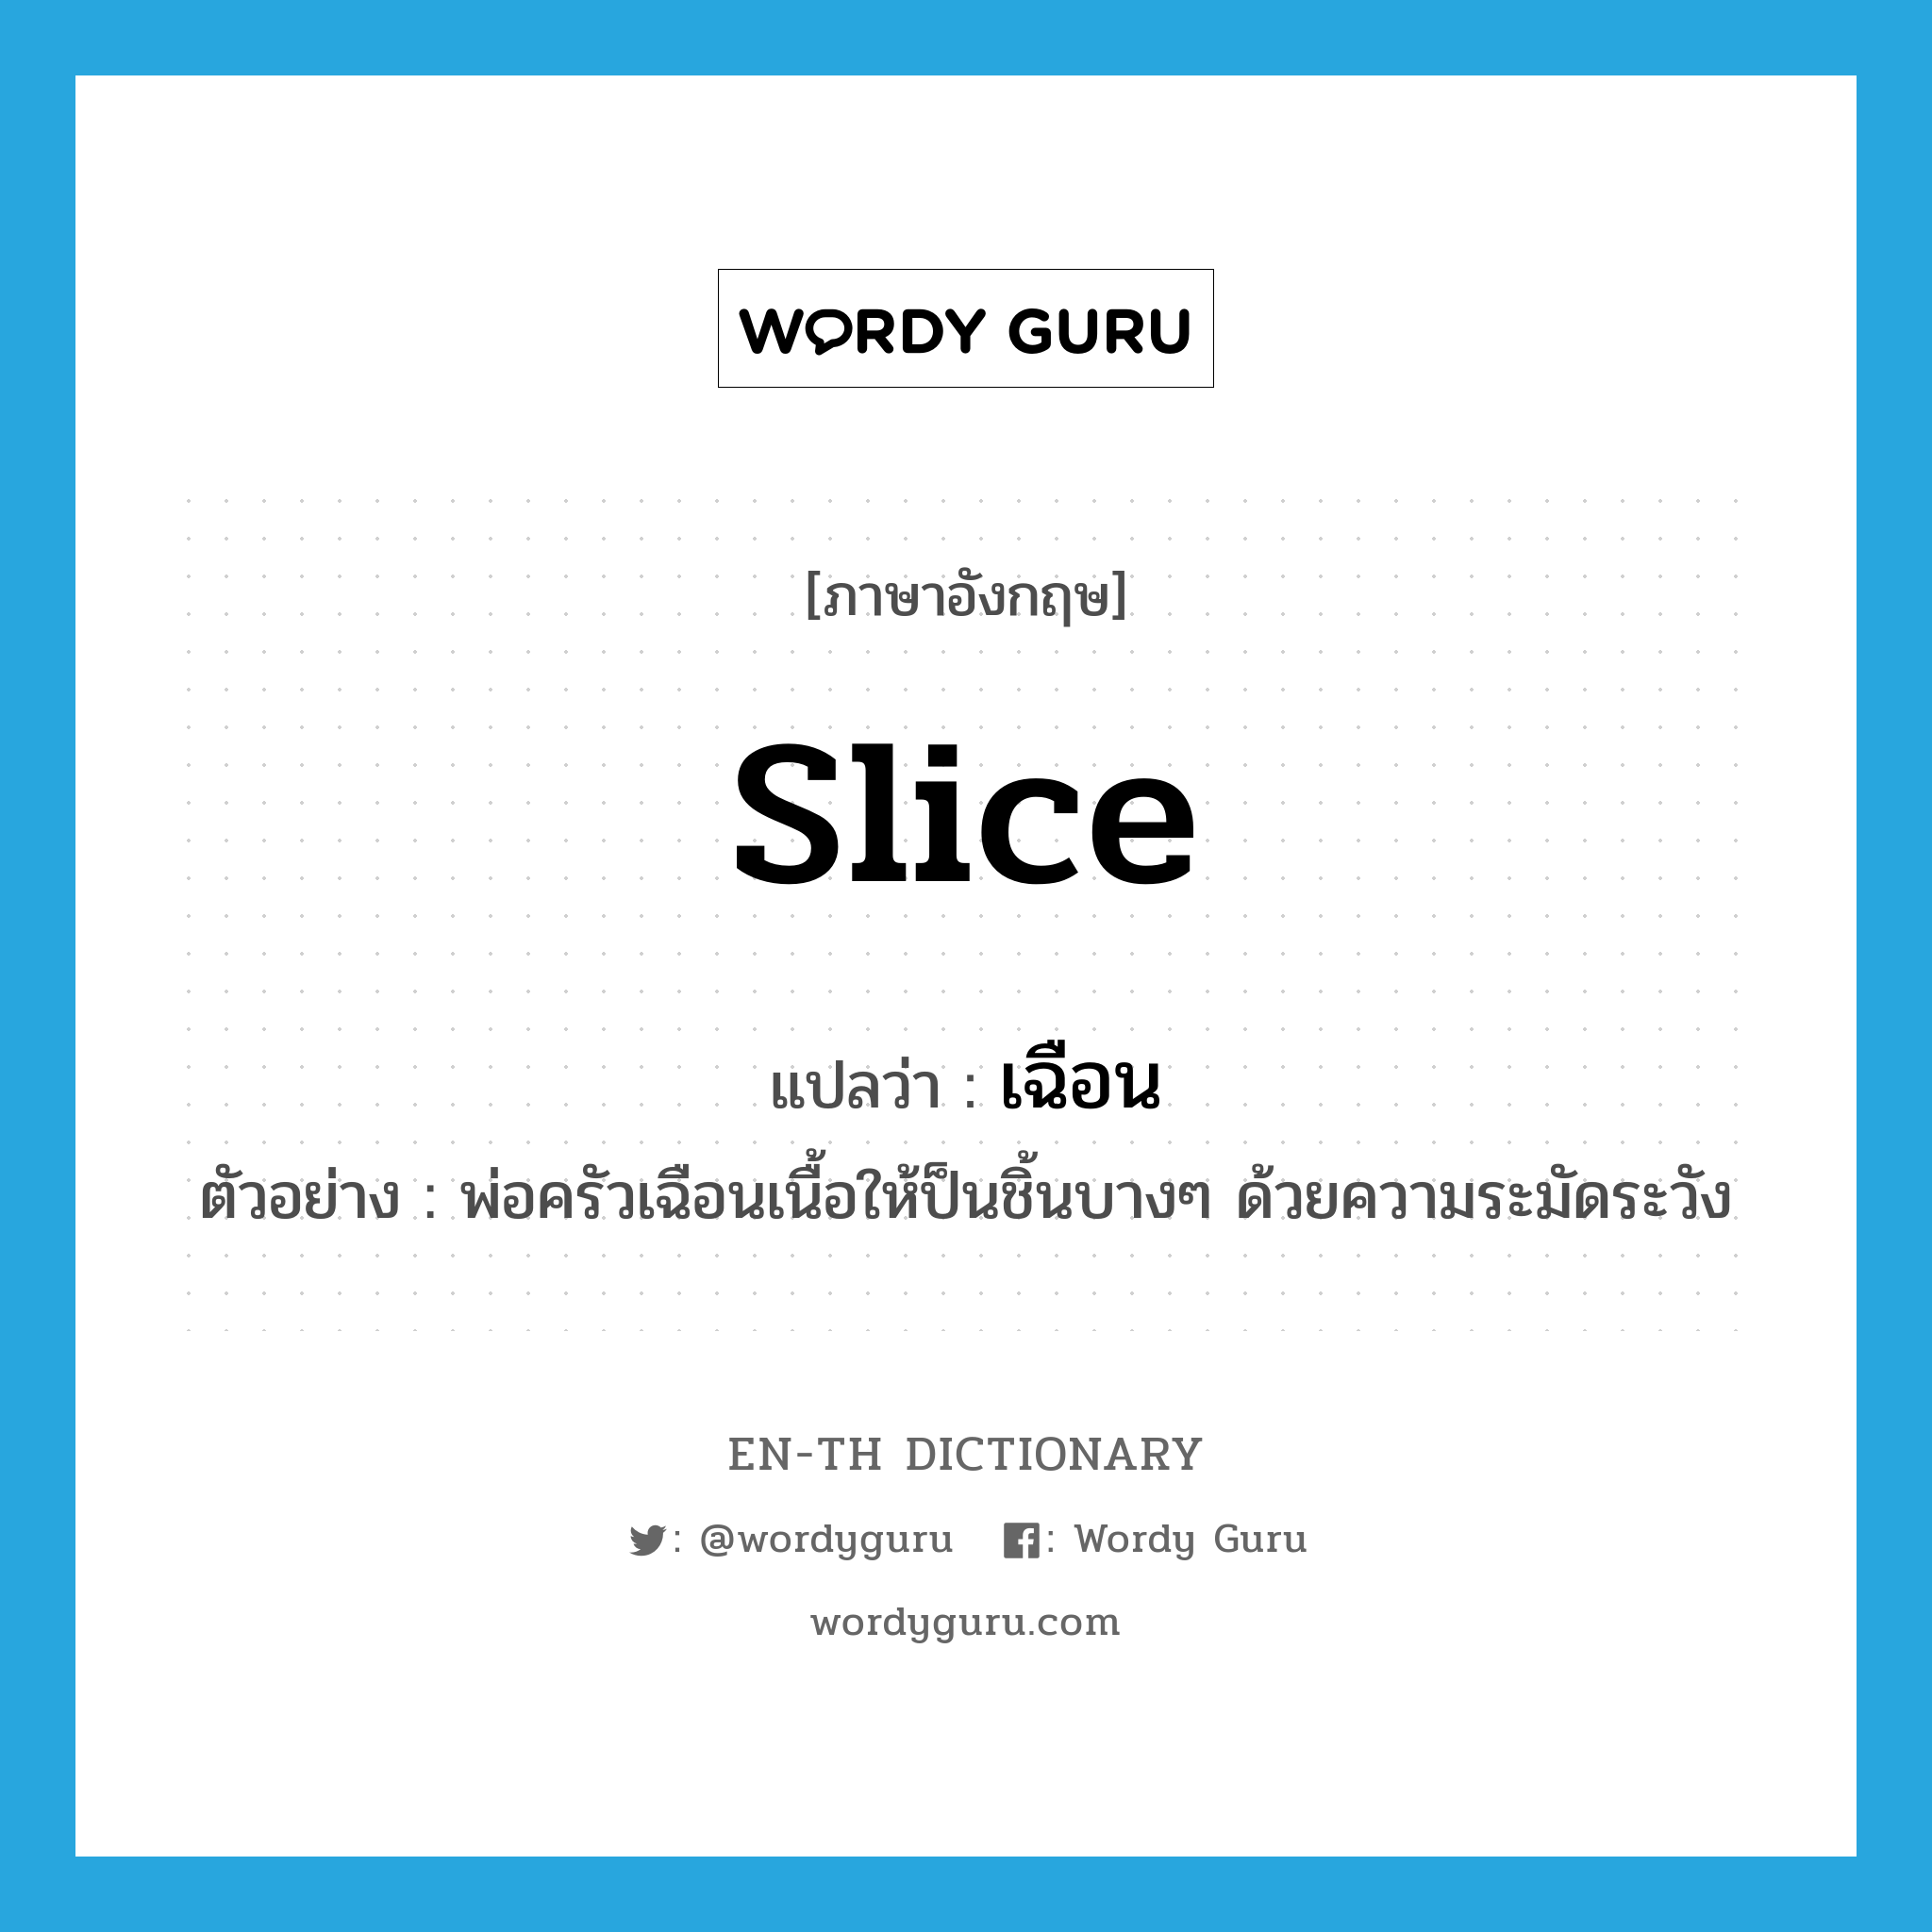 slice แปลว่า?, คำศัพท์ภาษาอังกฤษ slice แปลว่า เฉือน ประเภท V ตัวอย่าง พ่อครัวเฉือนเนื้อให้ป็นชิ้นบางๆ ด้วยความระมัดระวัง หมวด V